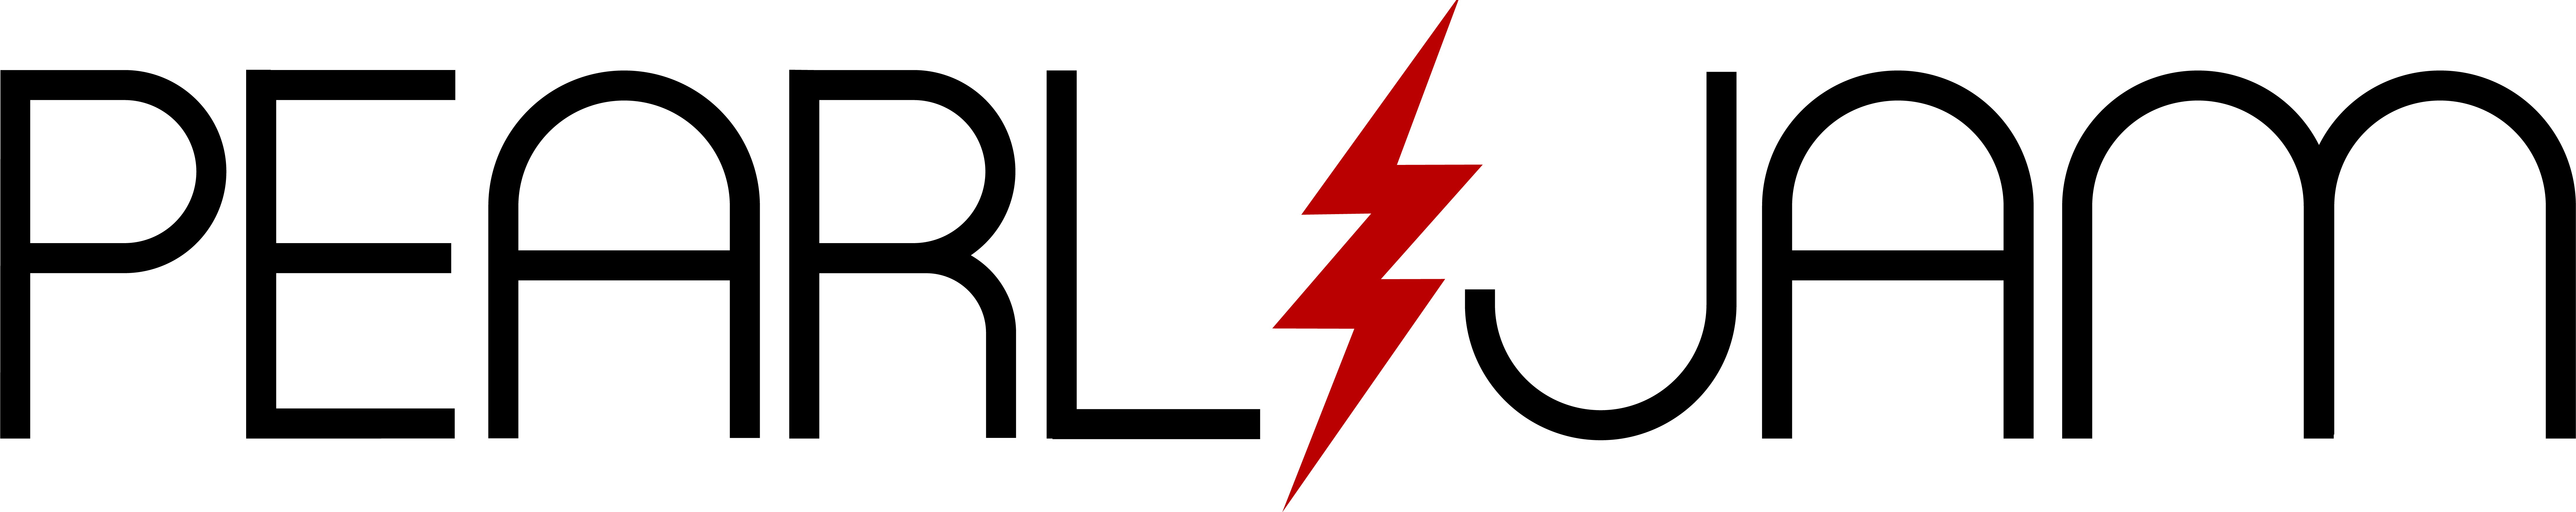 Pearl Jam Bolt - Pearl Jam Lightning Bolt Logo (8802x1748)